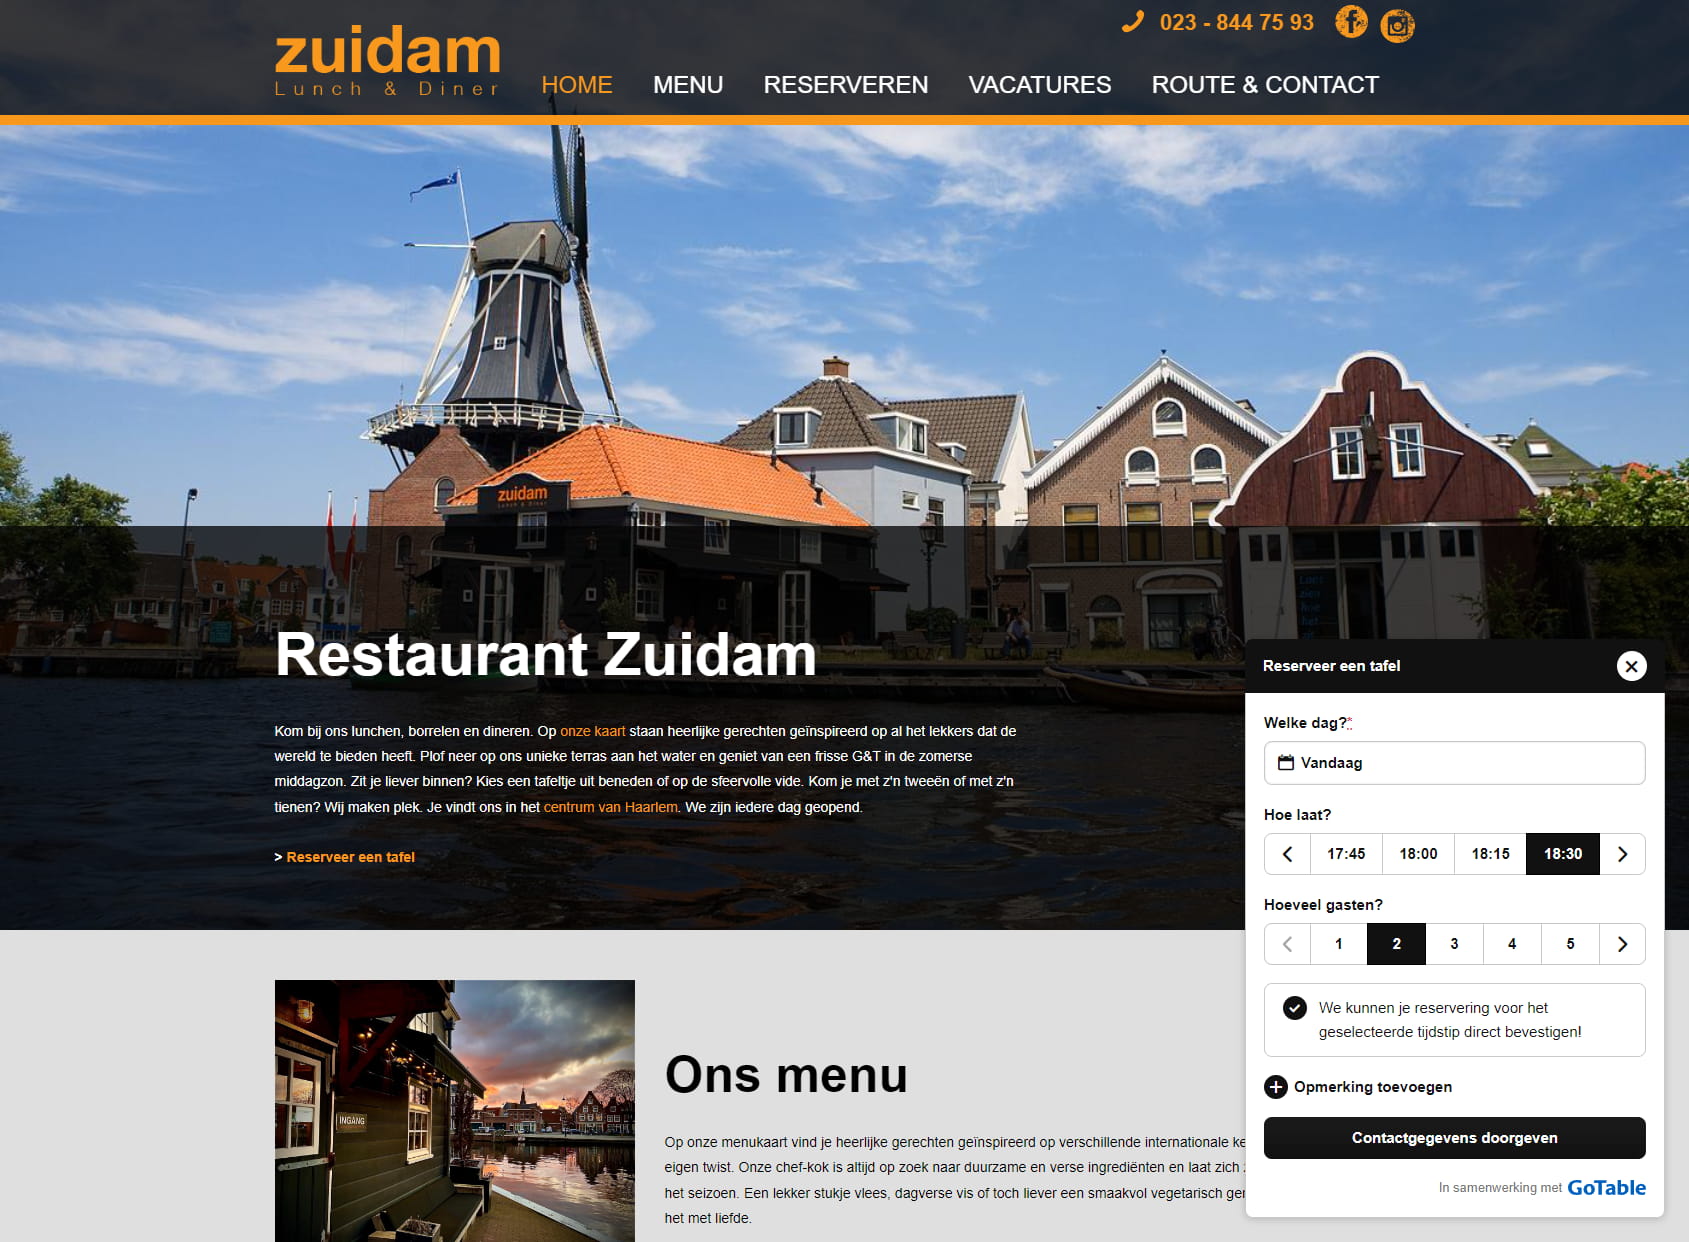 Restaurant Zuidam